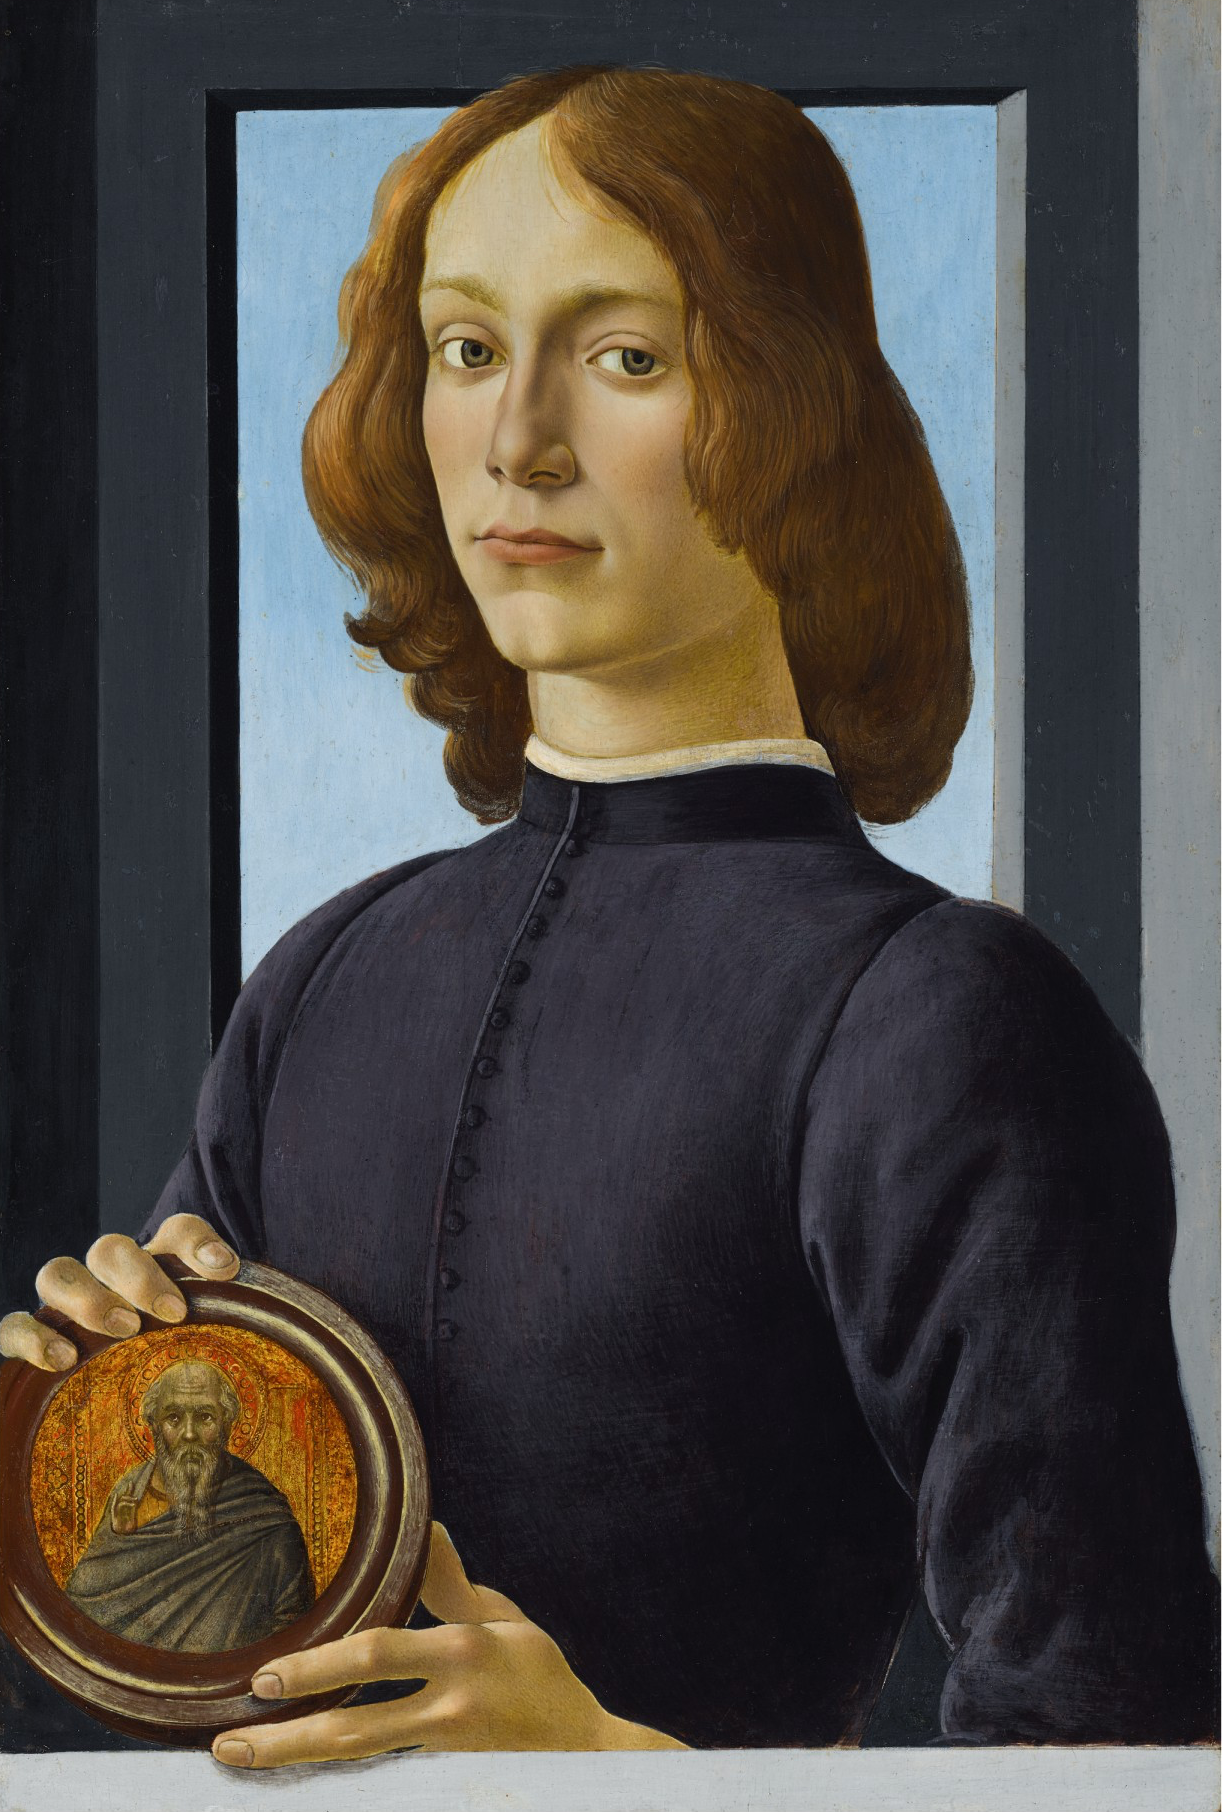 Joven sosteniendo un medallón by Sandro Botticelli - c. 1470-1480 - 58,4 x 39,4 cm Colección privada